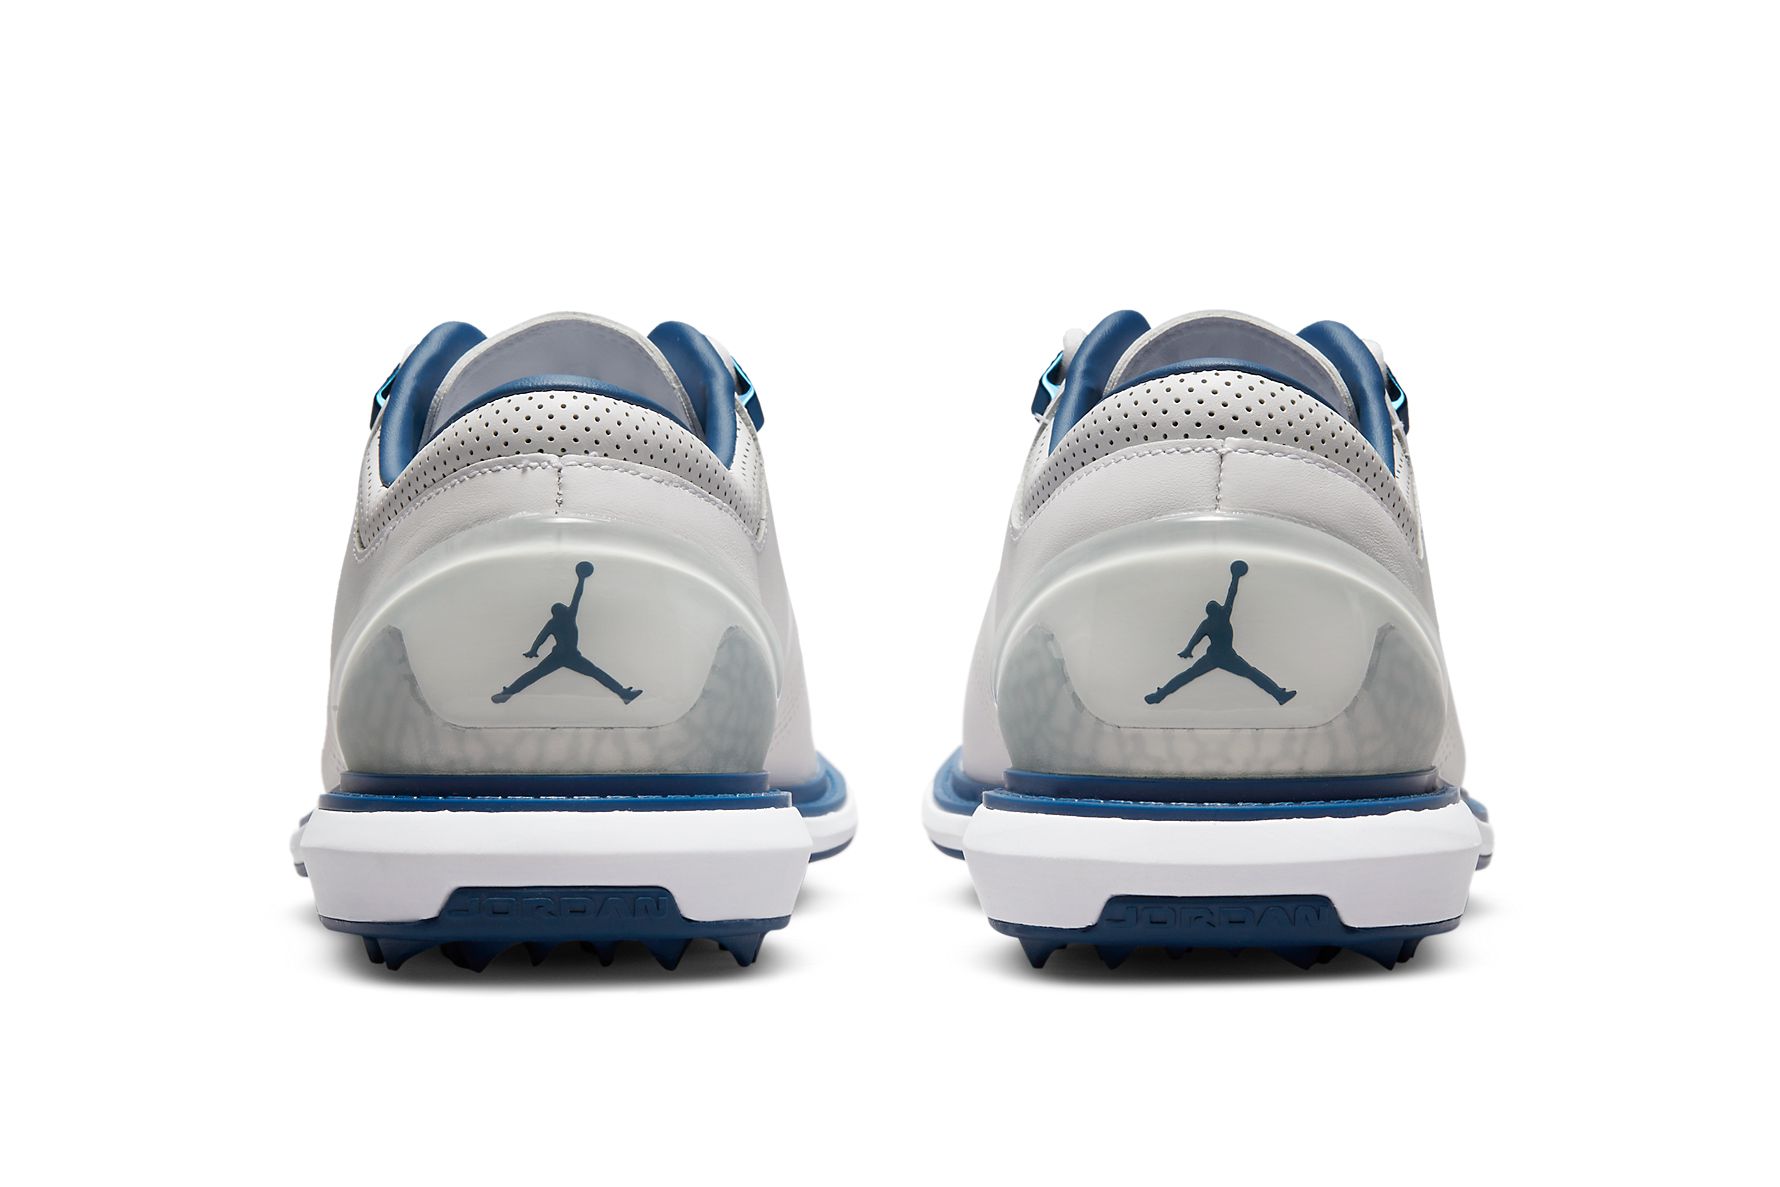 Jordan ADG 4 Golf Shoe Release Date